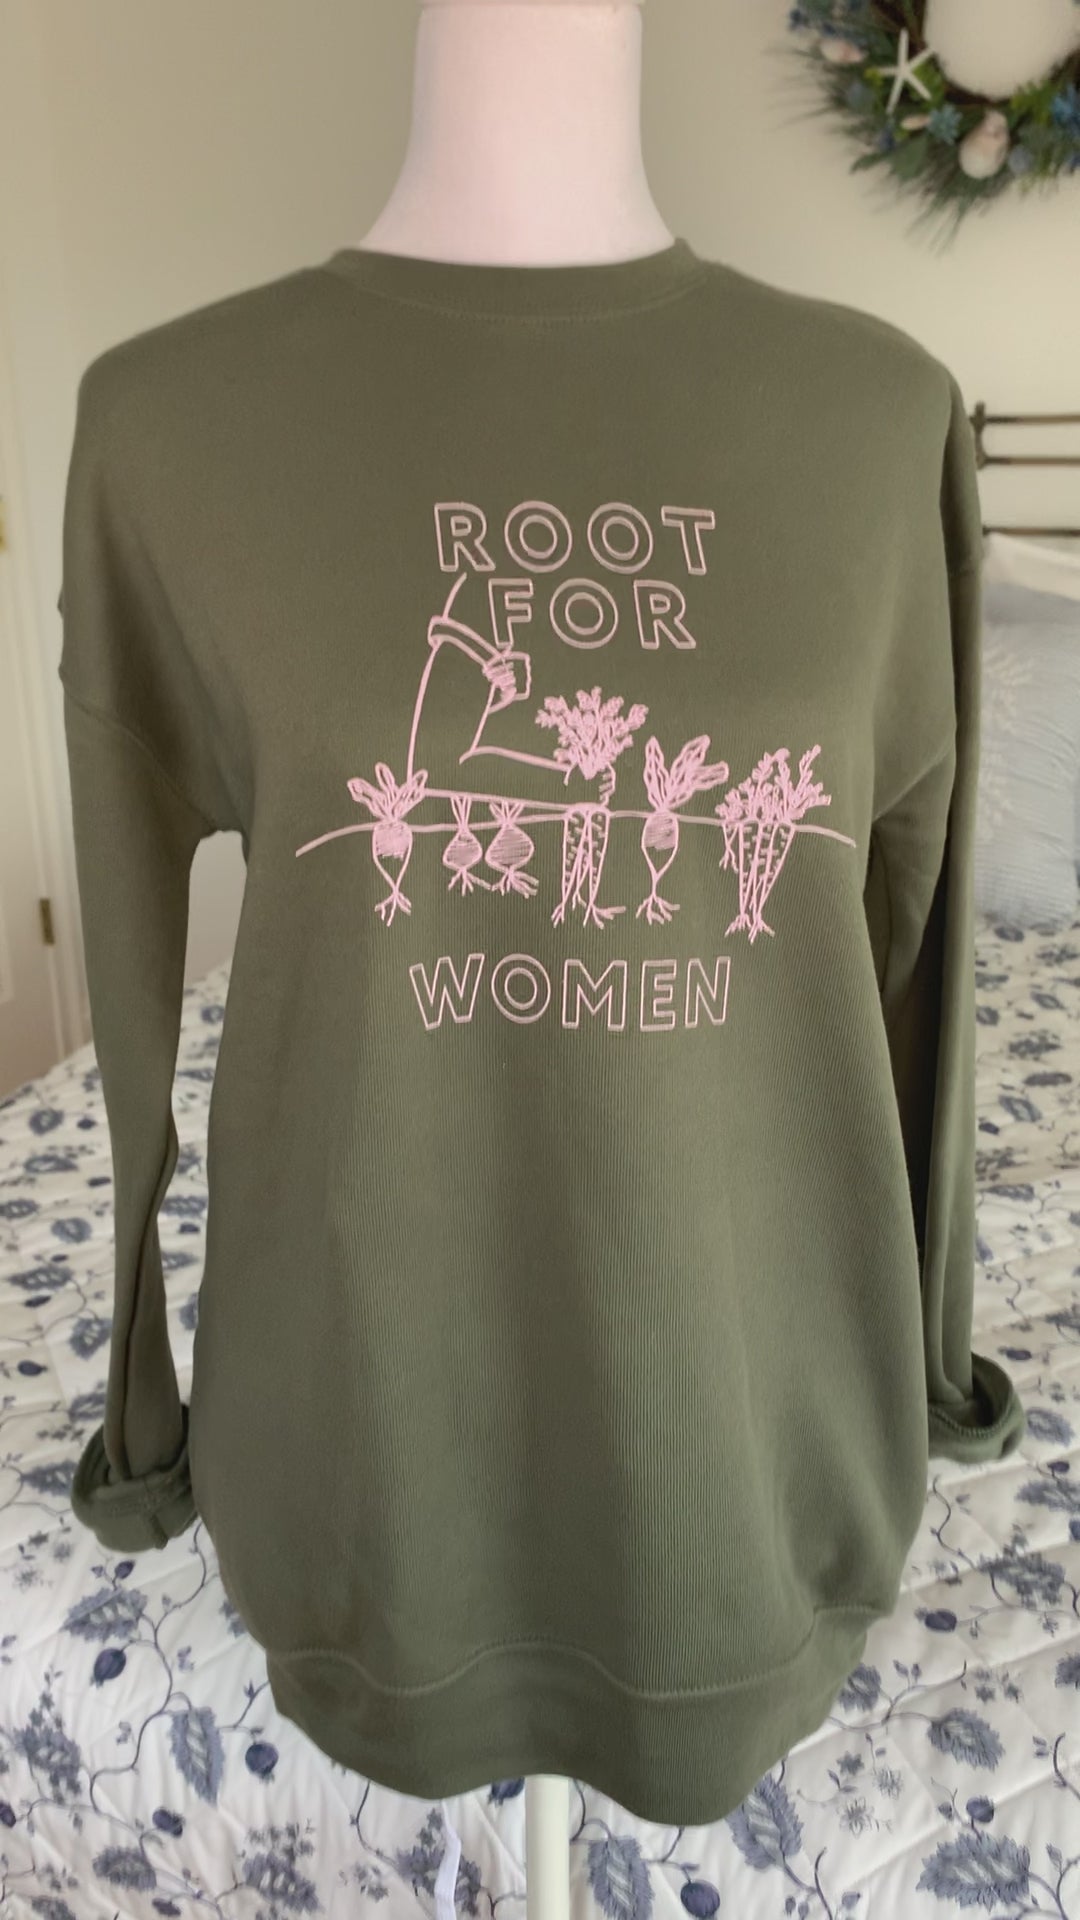 A green sweatshirt that reads "Root for Women" hangs on a manikin